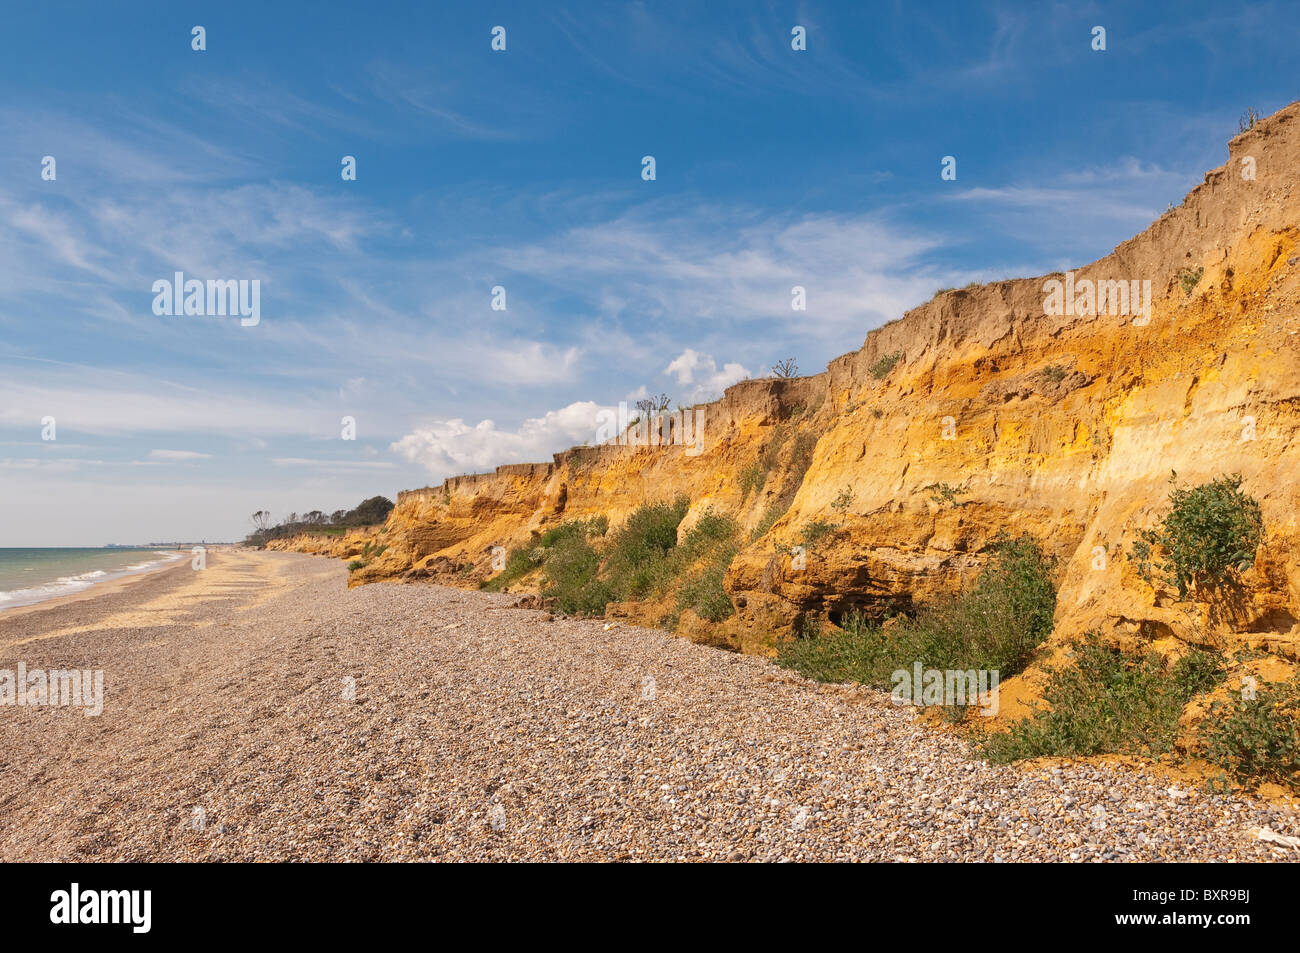 La falaise montrant l'érosion côtière sur la plage à Benacre , Suffolk , Bretagne , France Banque D'Images